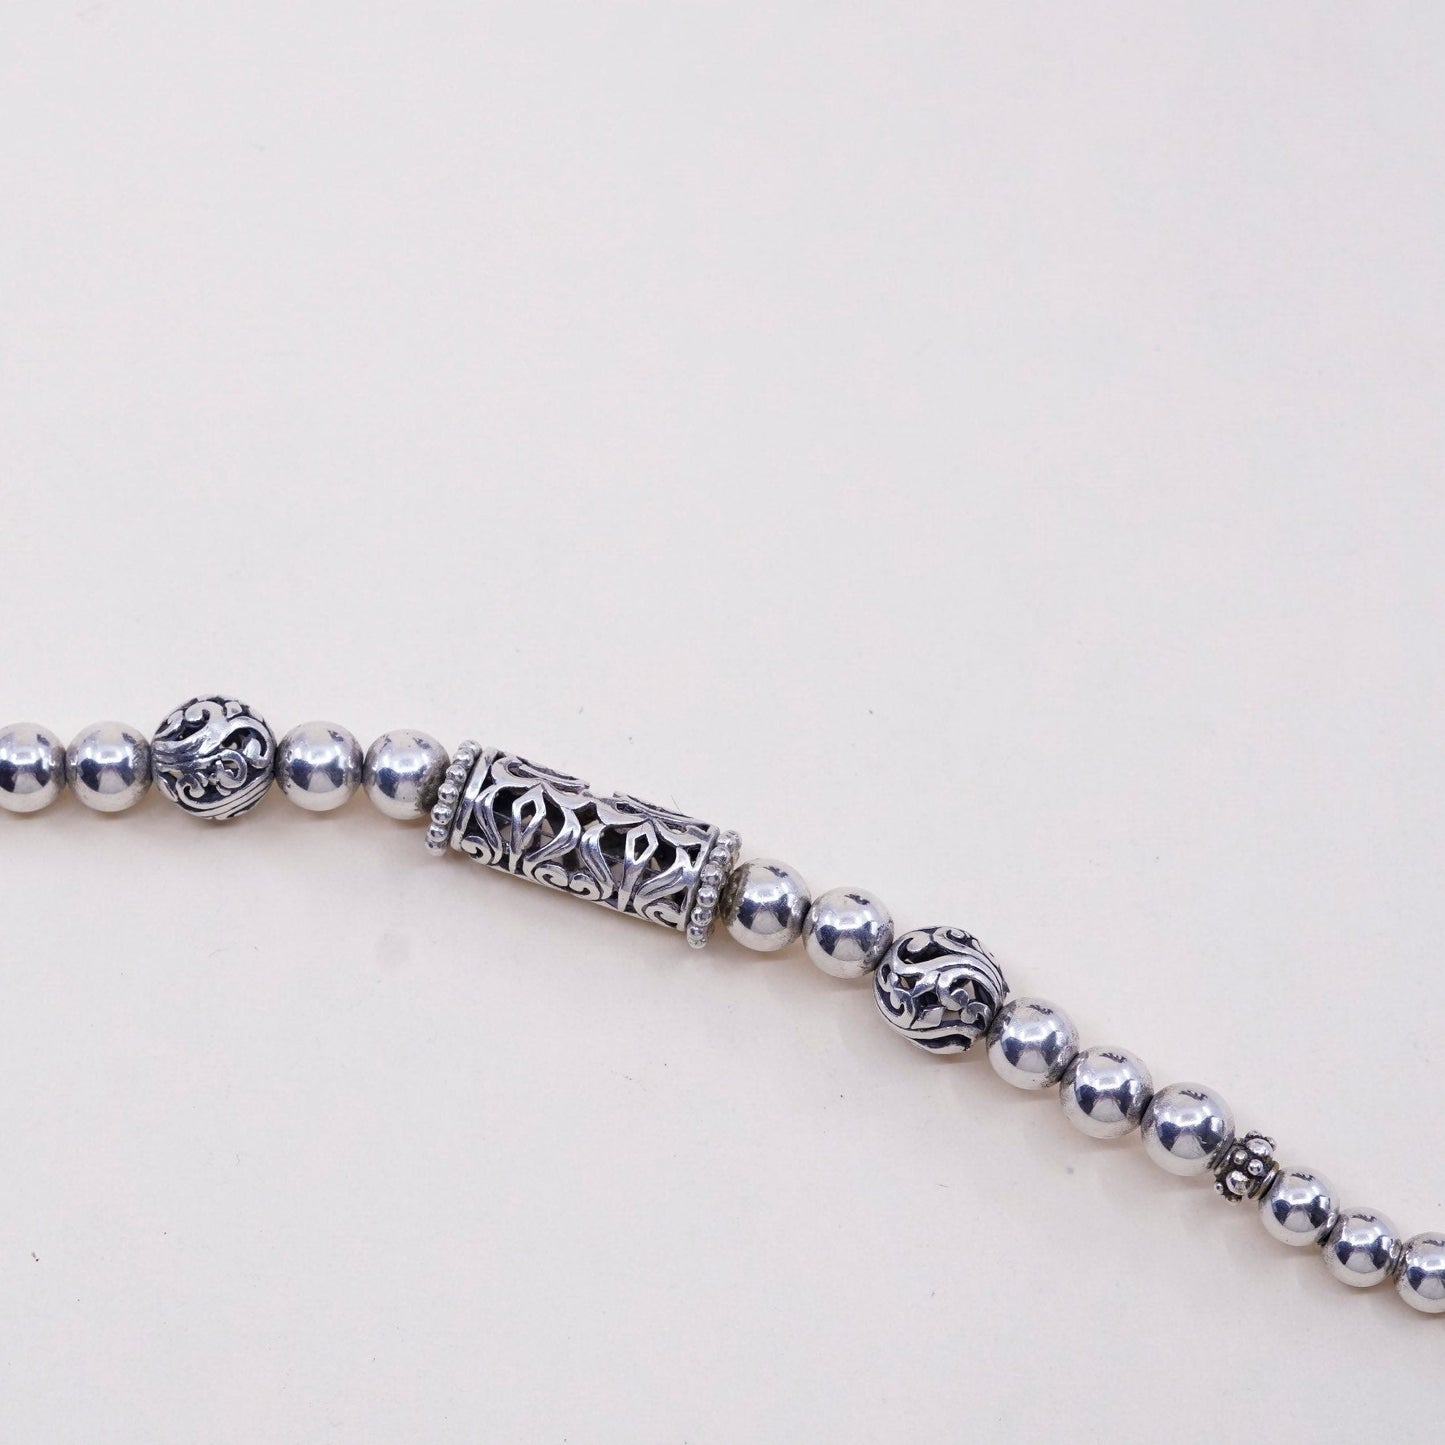 6.75”, vtg Sterling silver handmade bracelet, Mexico 925 Filigree bar w/ beads